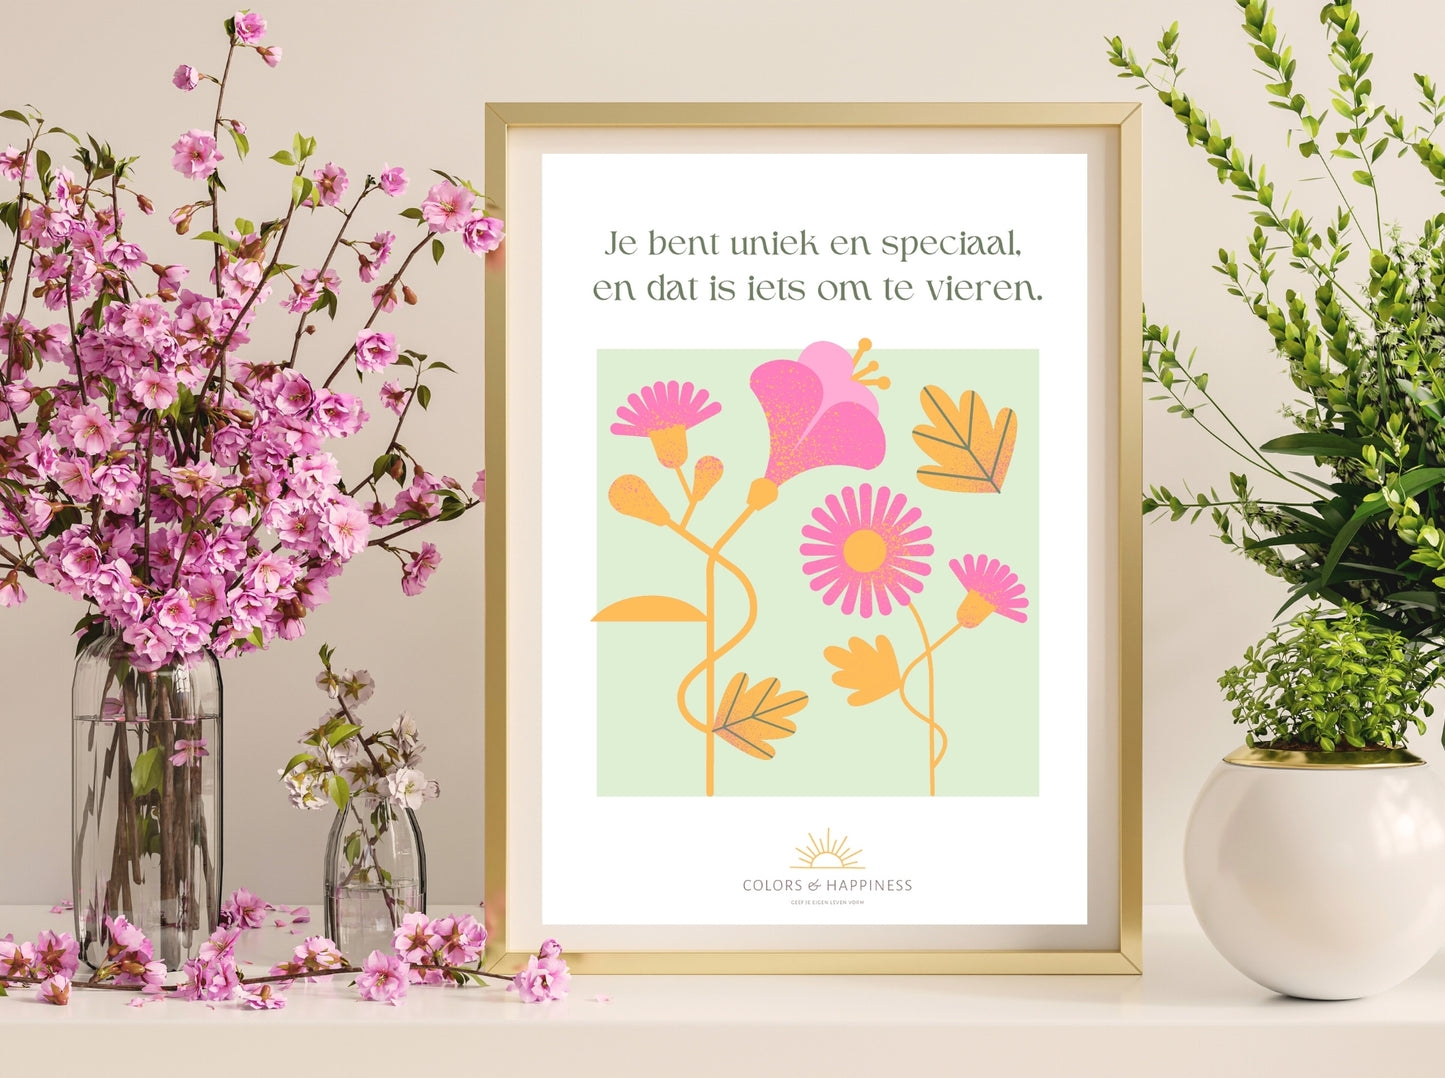 Inspirerende poster met quote "Je bent uniek..."en bloemen illustratie, digitale download voor een bewuster leven